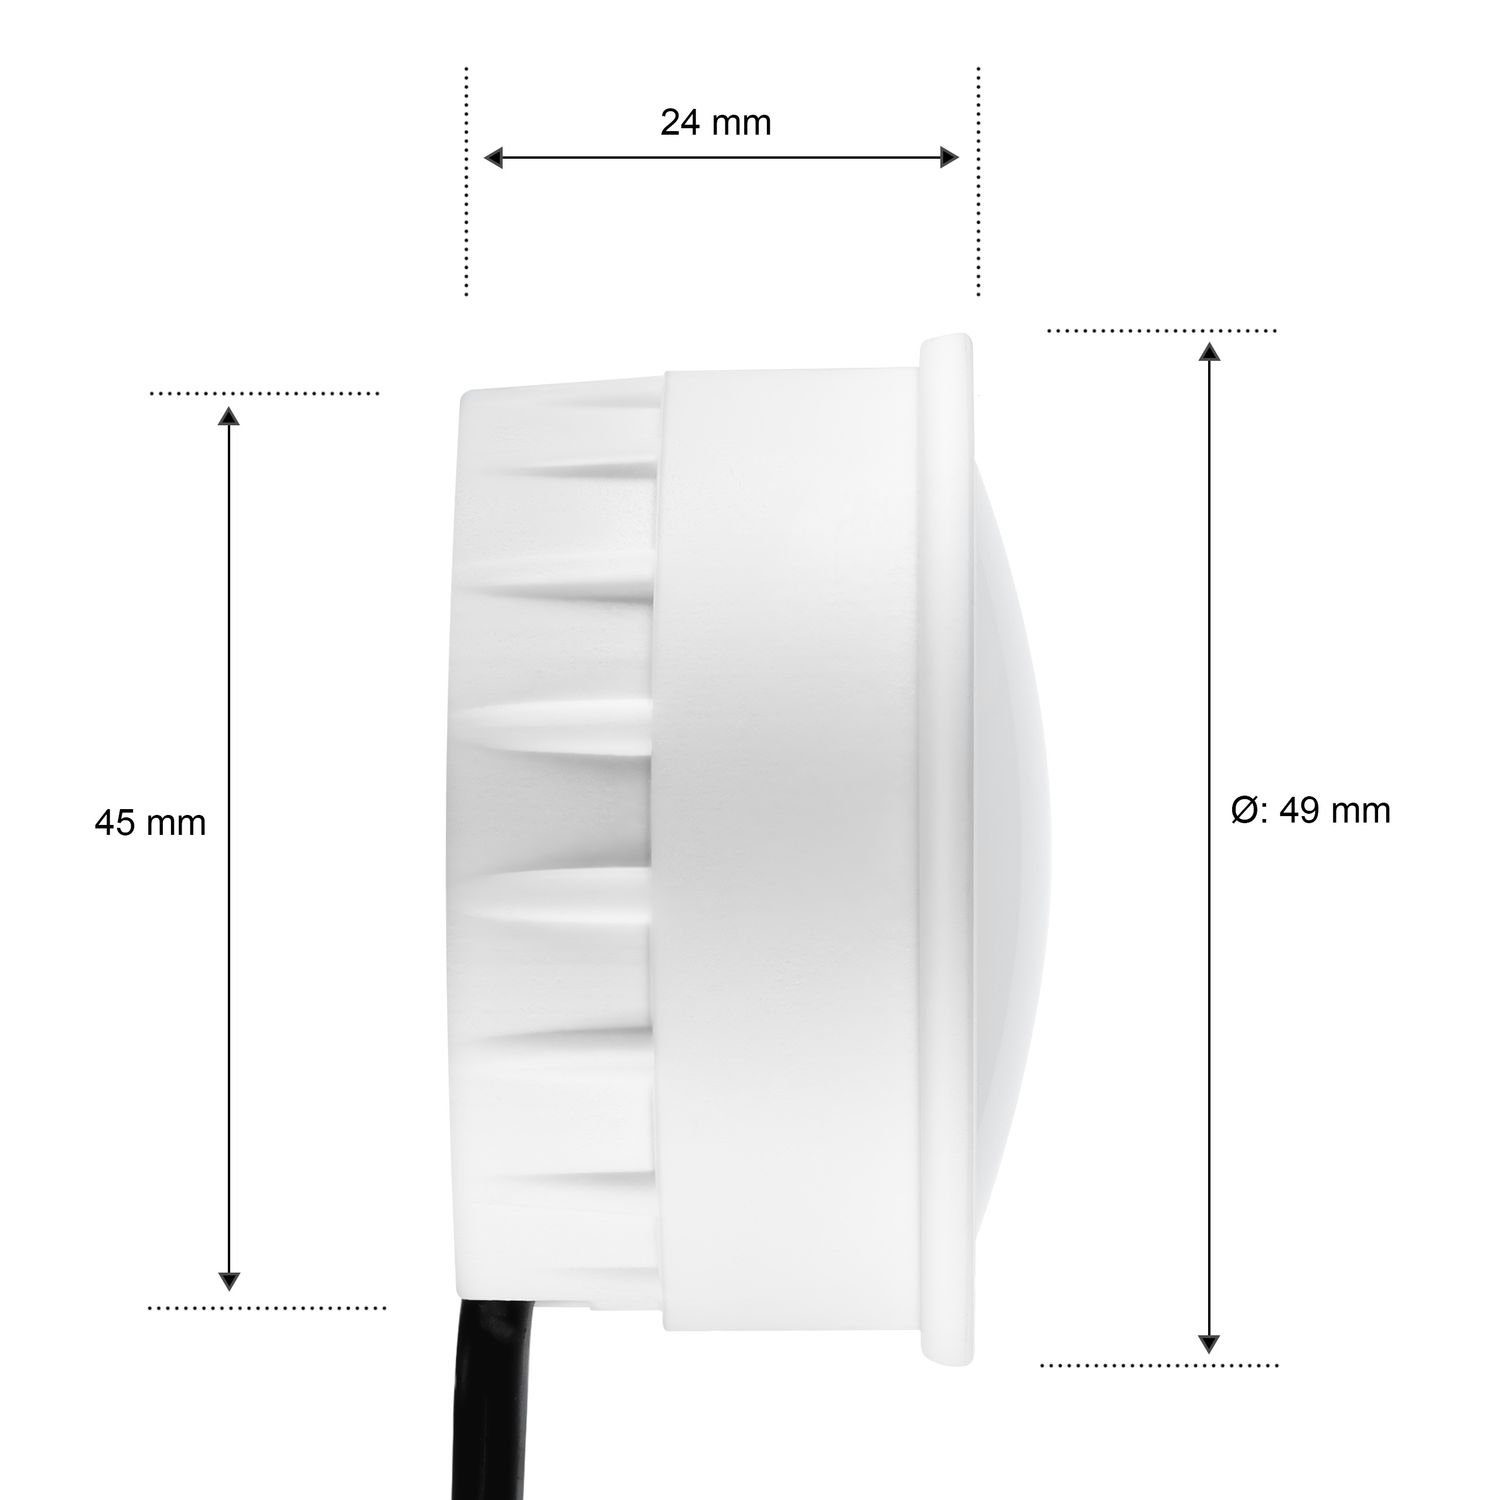 aluminium LED extra LED 10er CCT gebürst in flach Einbaustrahler RGB Einbaustrahler - Set LEDANDO